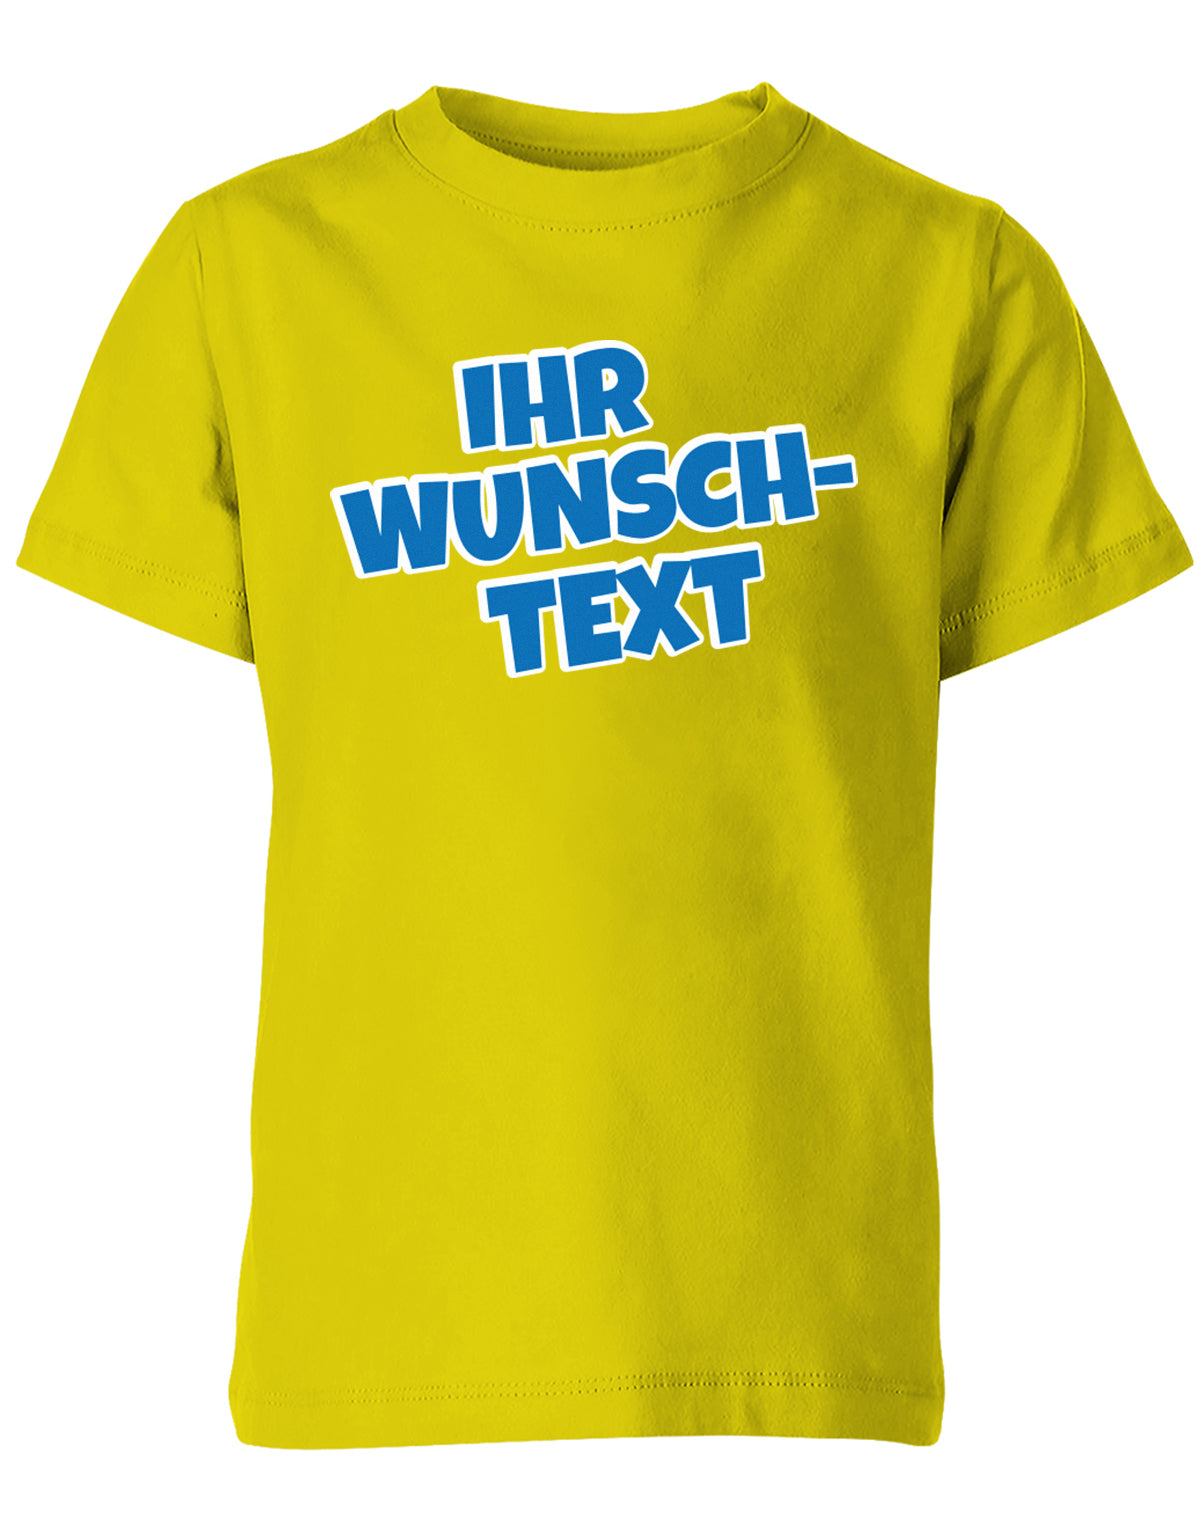 Kinder Tshirt mit Wunschtext.  Comic Schriftart mit weißer Umrandung.  Gelb